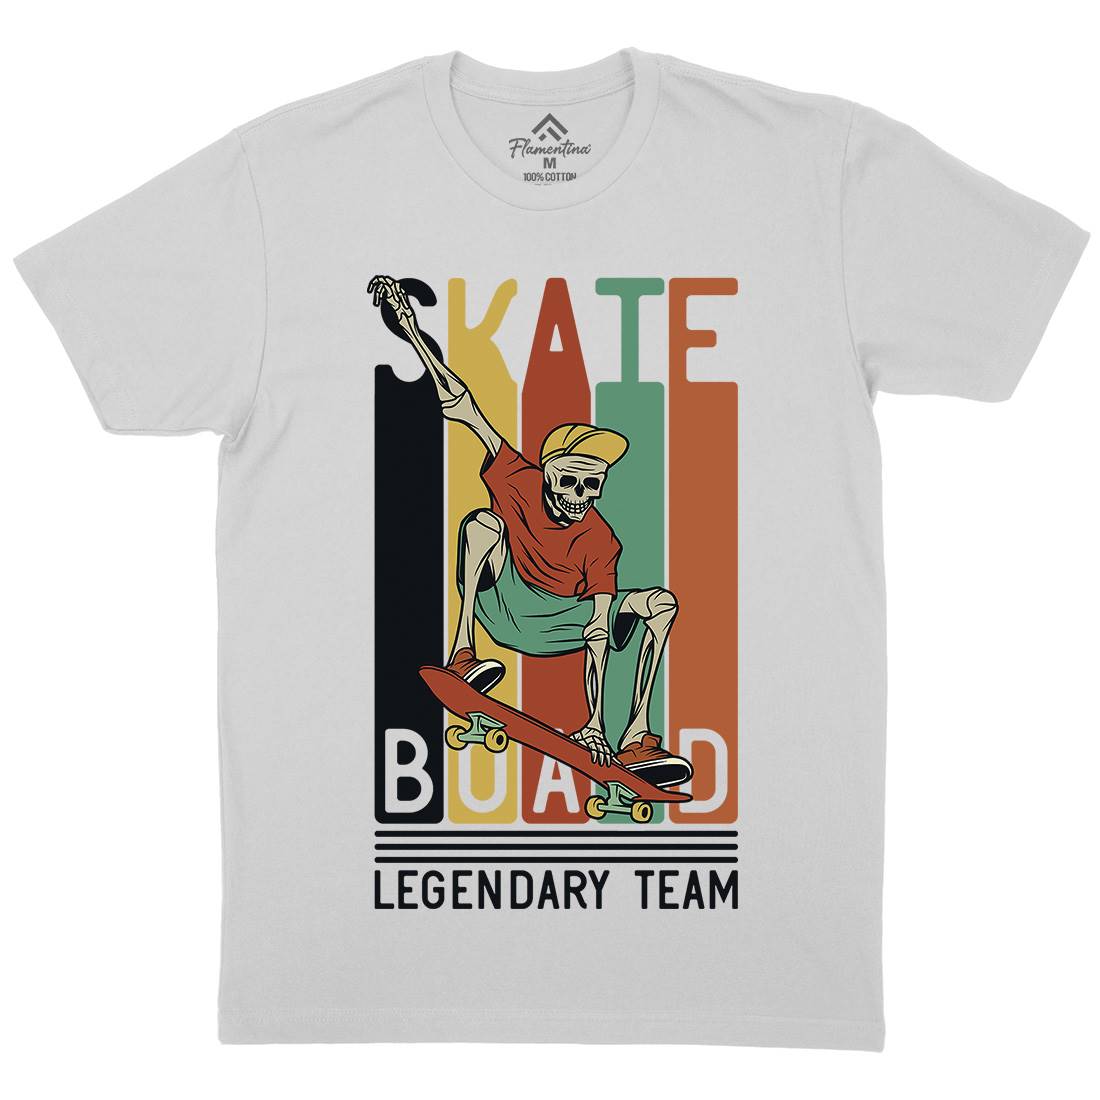 Legendary Team Mens Crew Neck T-Shirt Skate D952